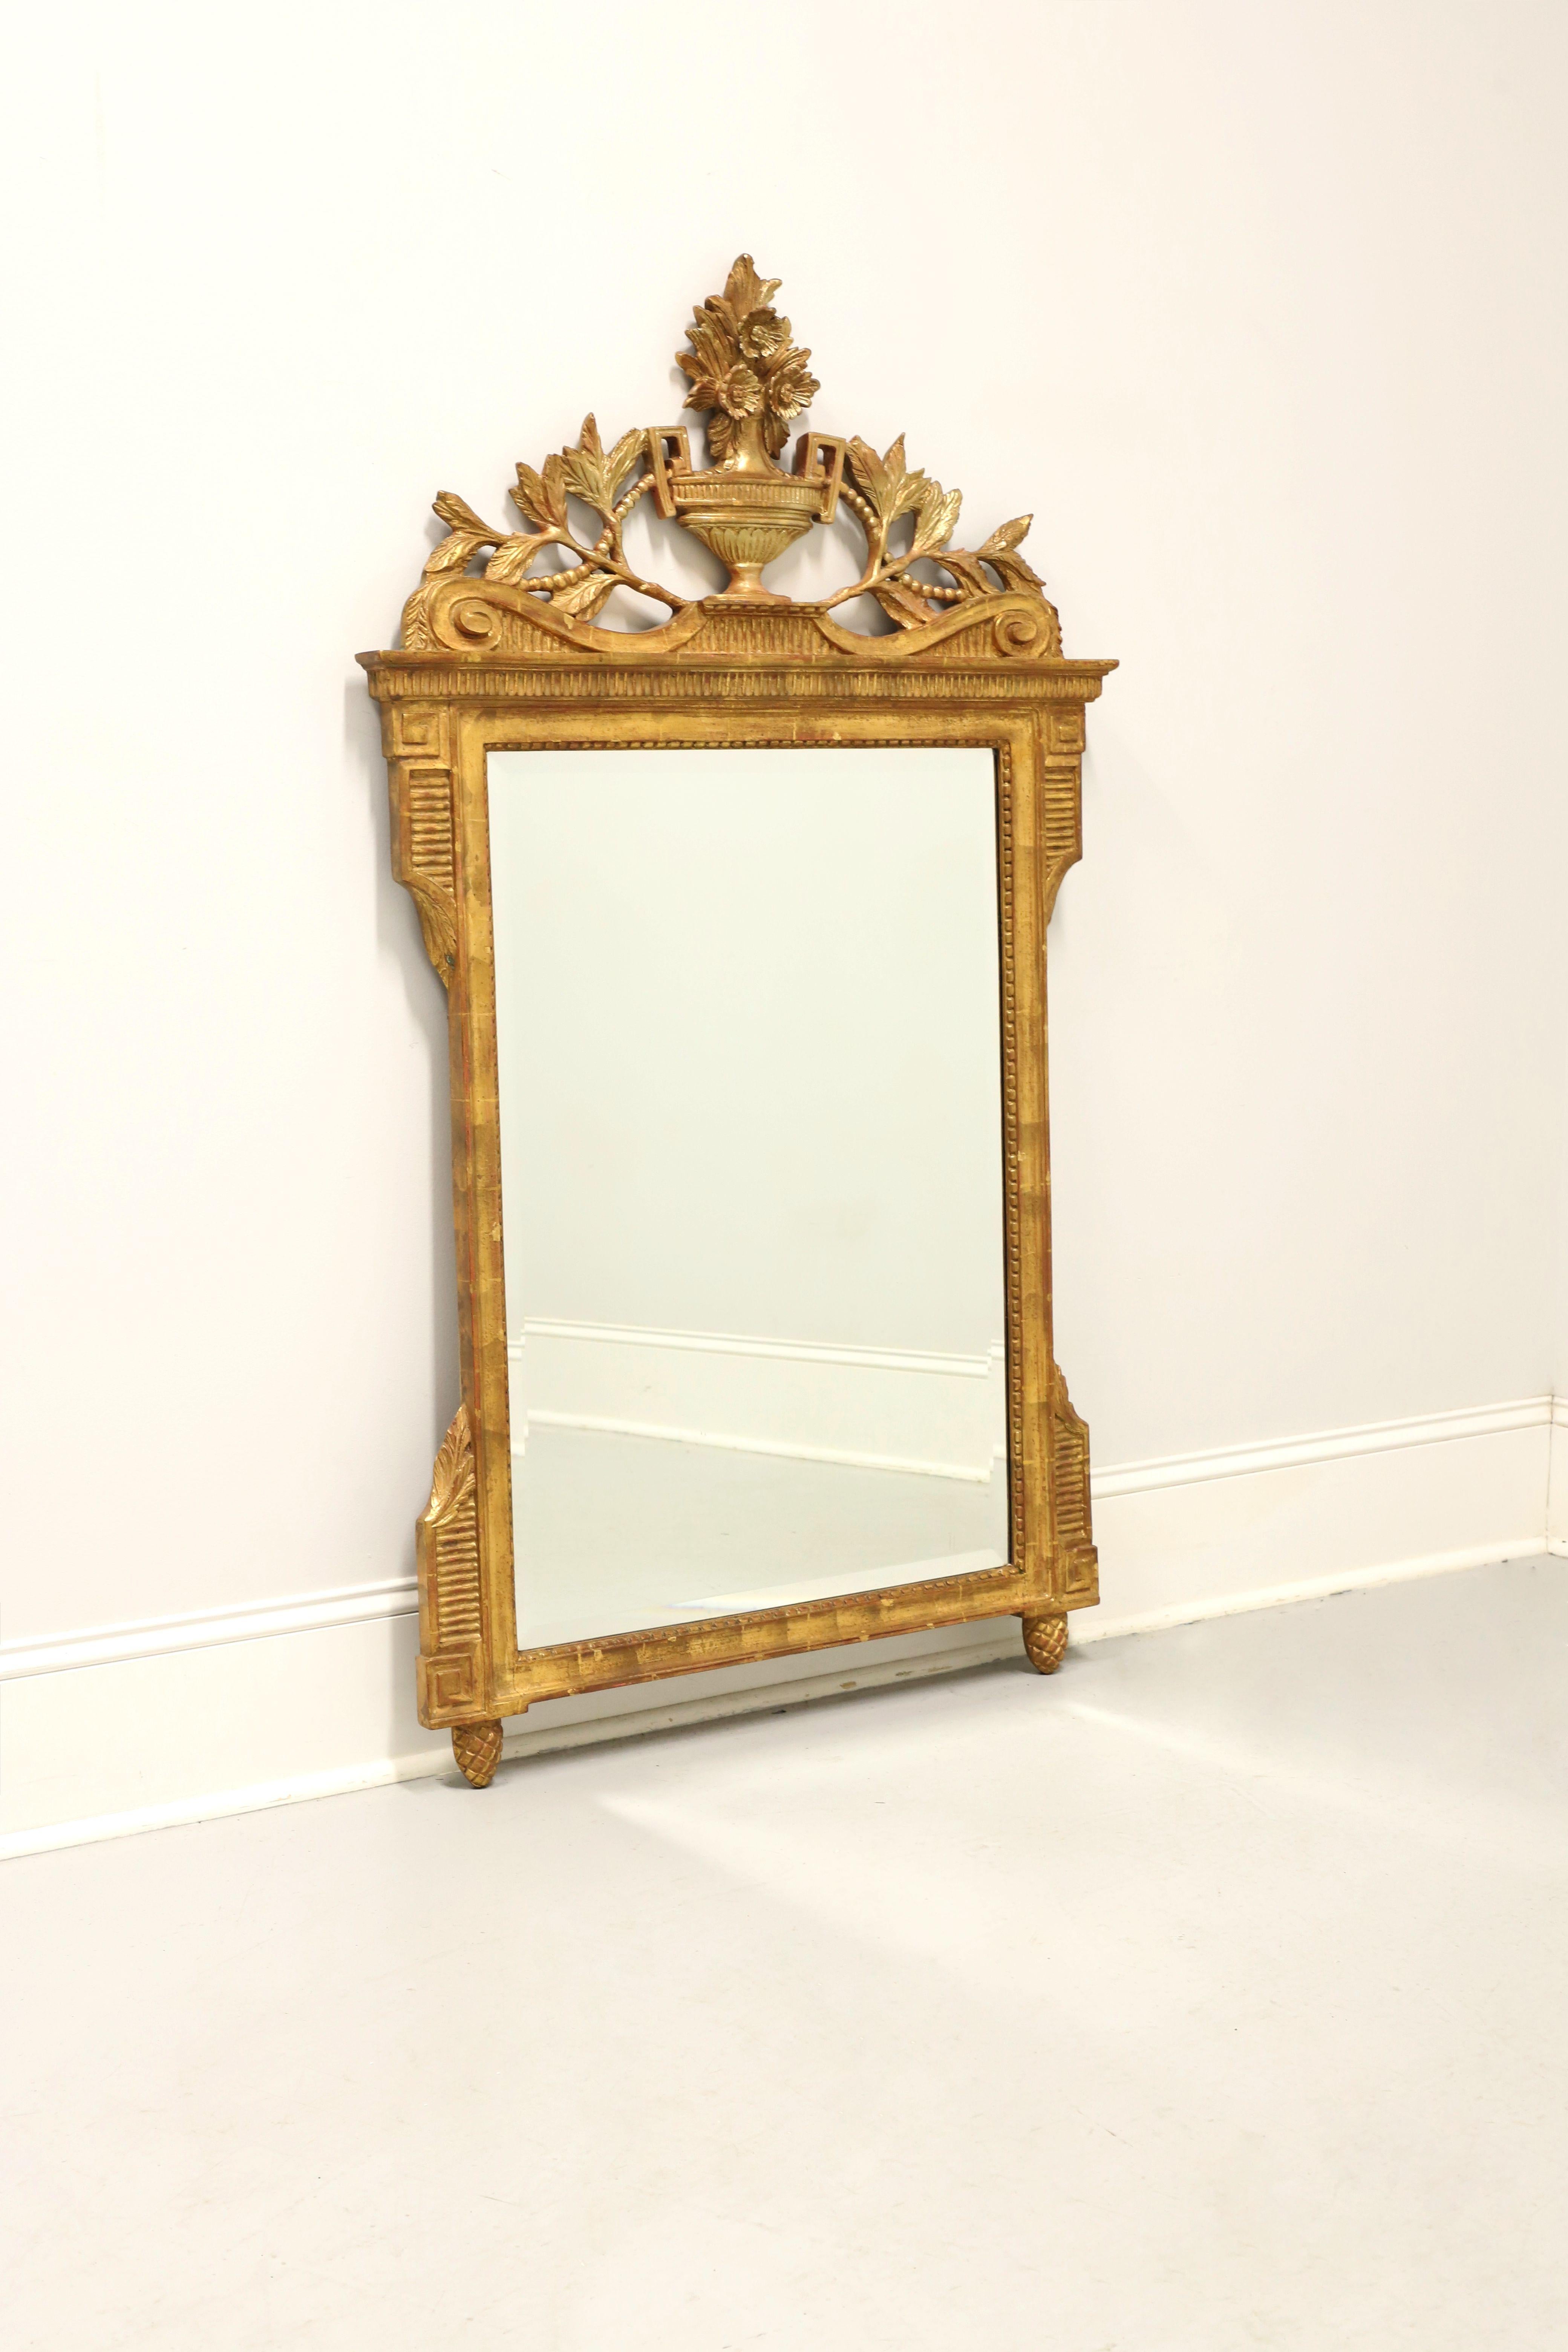 Miroir mural de style néoclassique, sans marque. Miroir en verre biseauté dans un cadre composite doré orné d'éléments architecturaux, d'une ornementation de feuillage en bois dans la partie supérieure, d'une urne centrale avec un motif floral dans